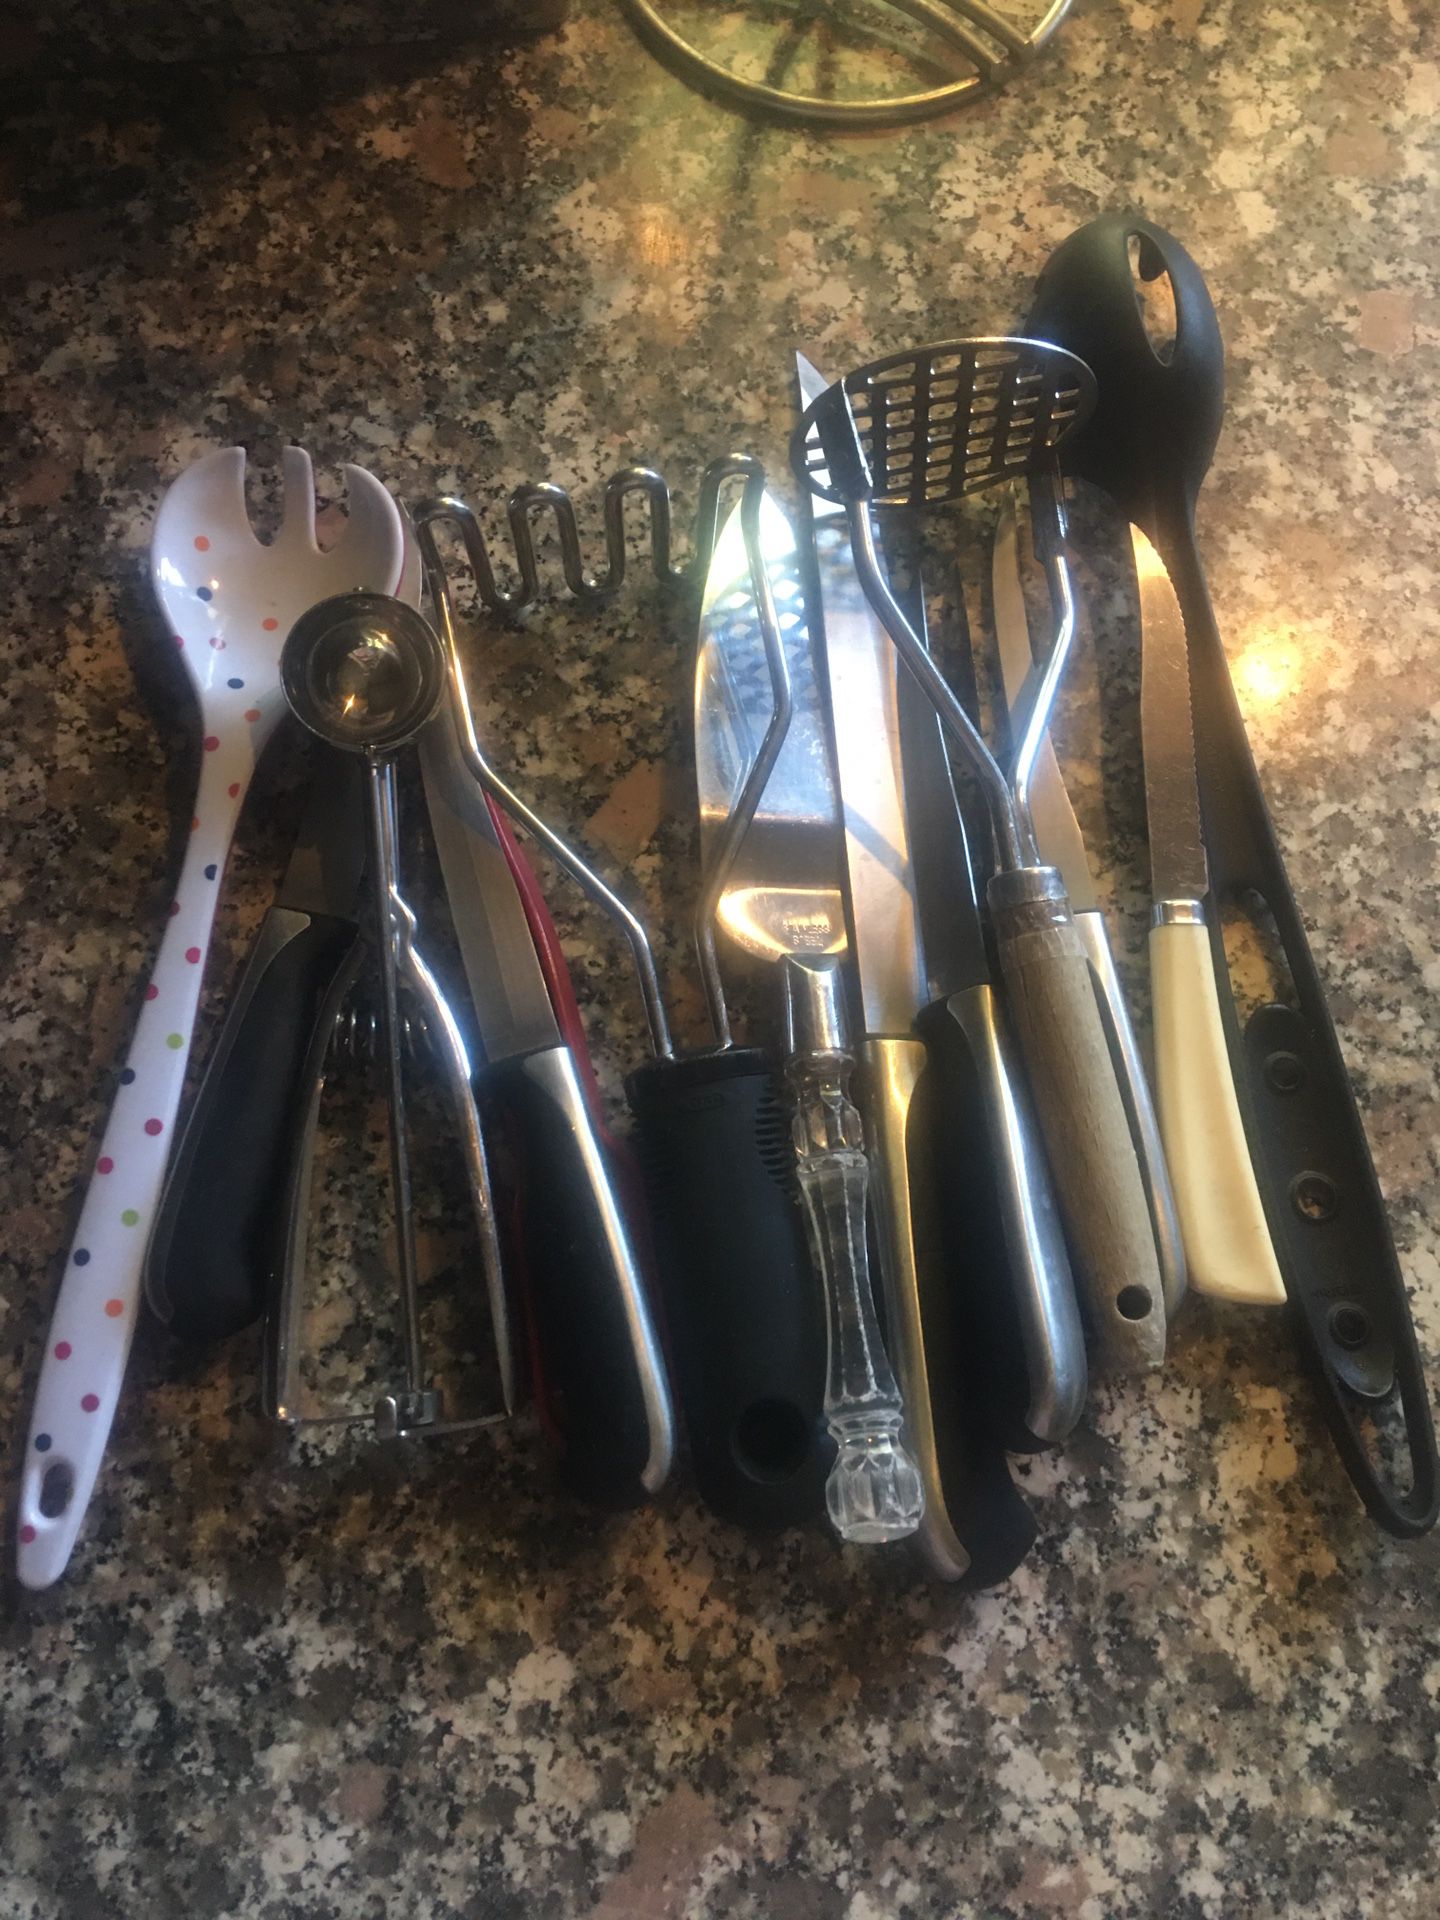 Free kitchen utensils.